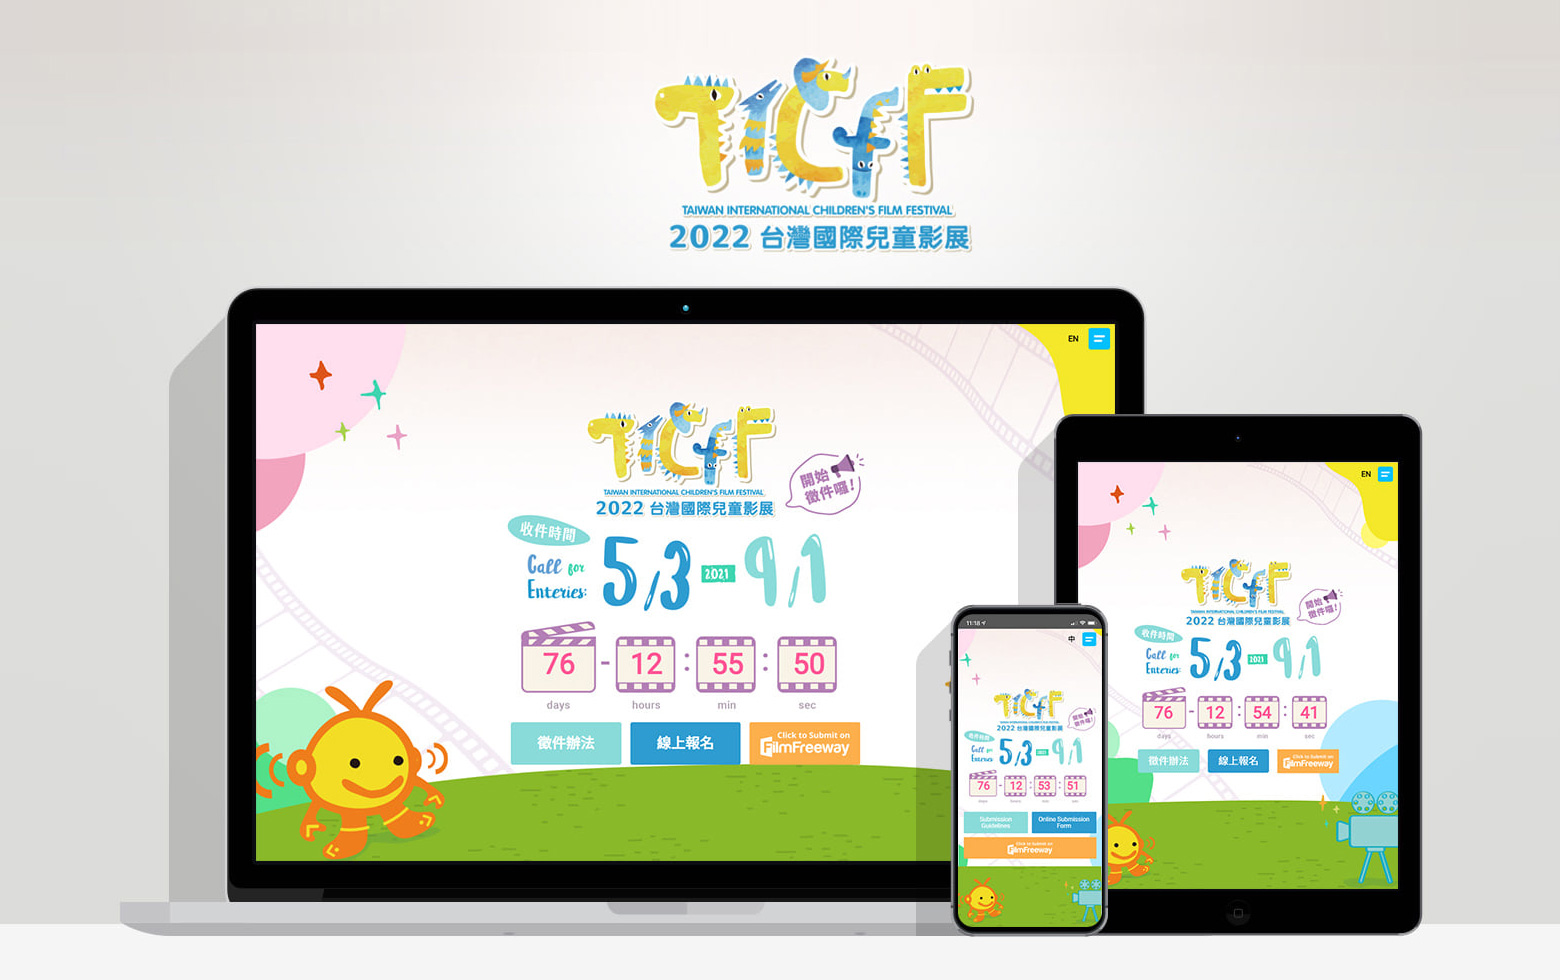 公共電視台灣國際兒童影展